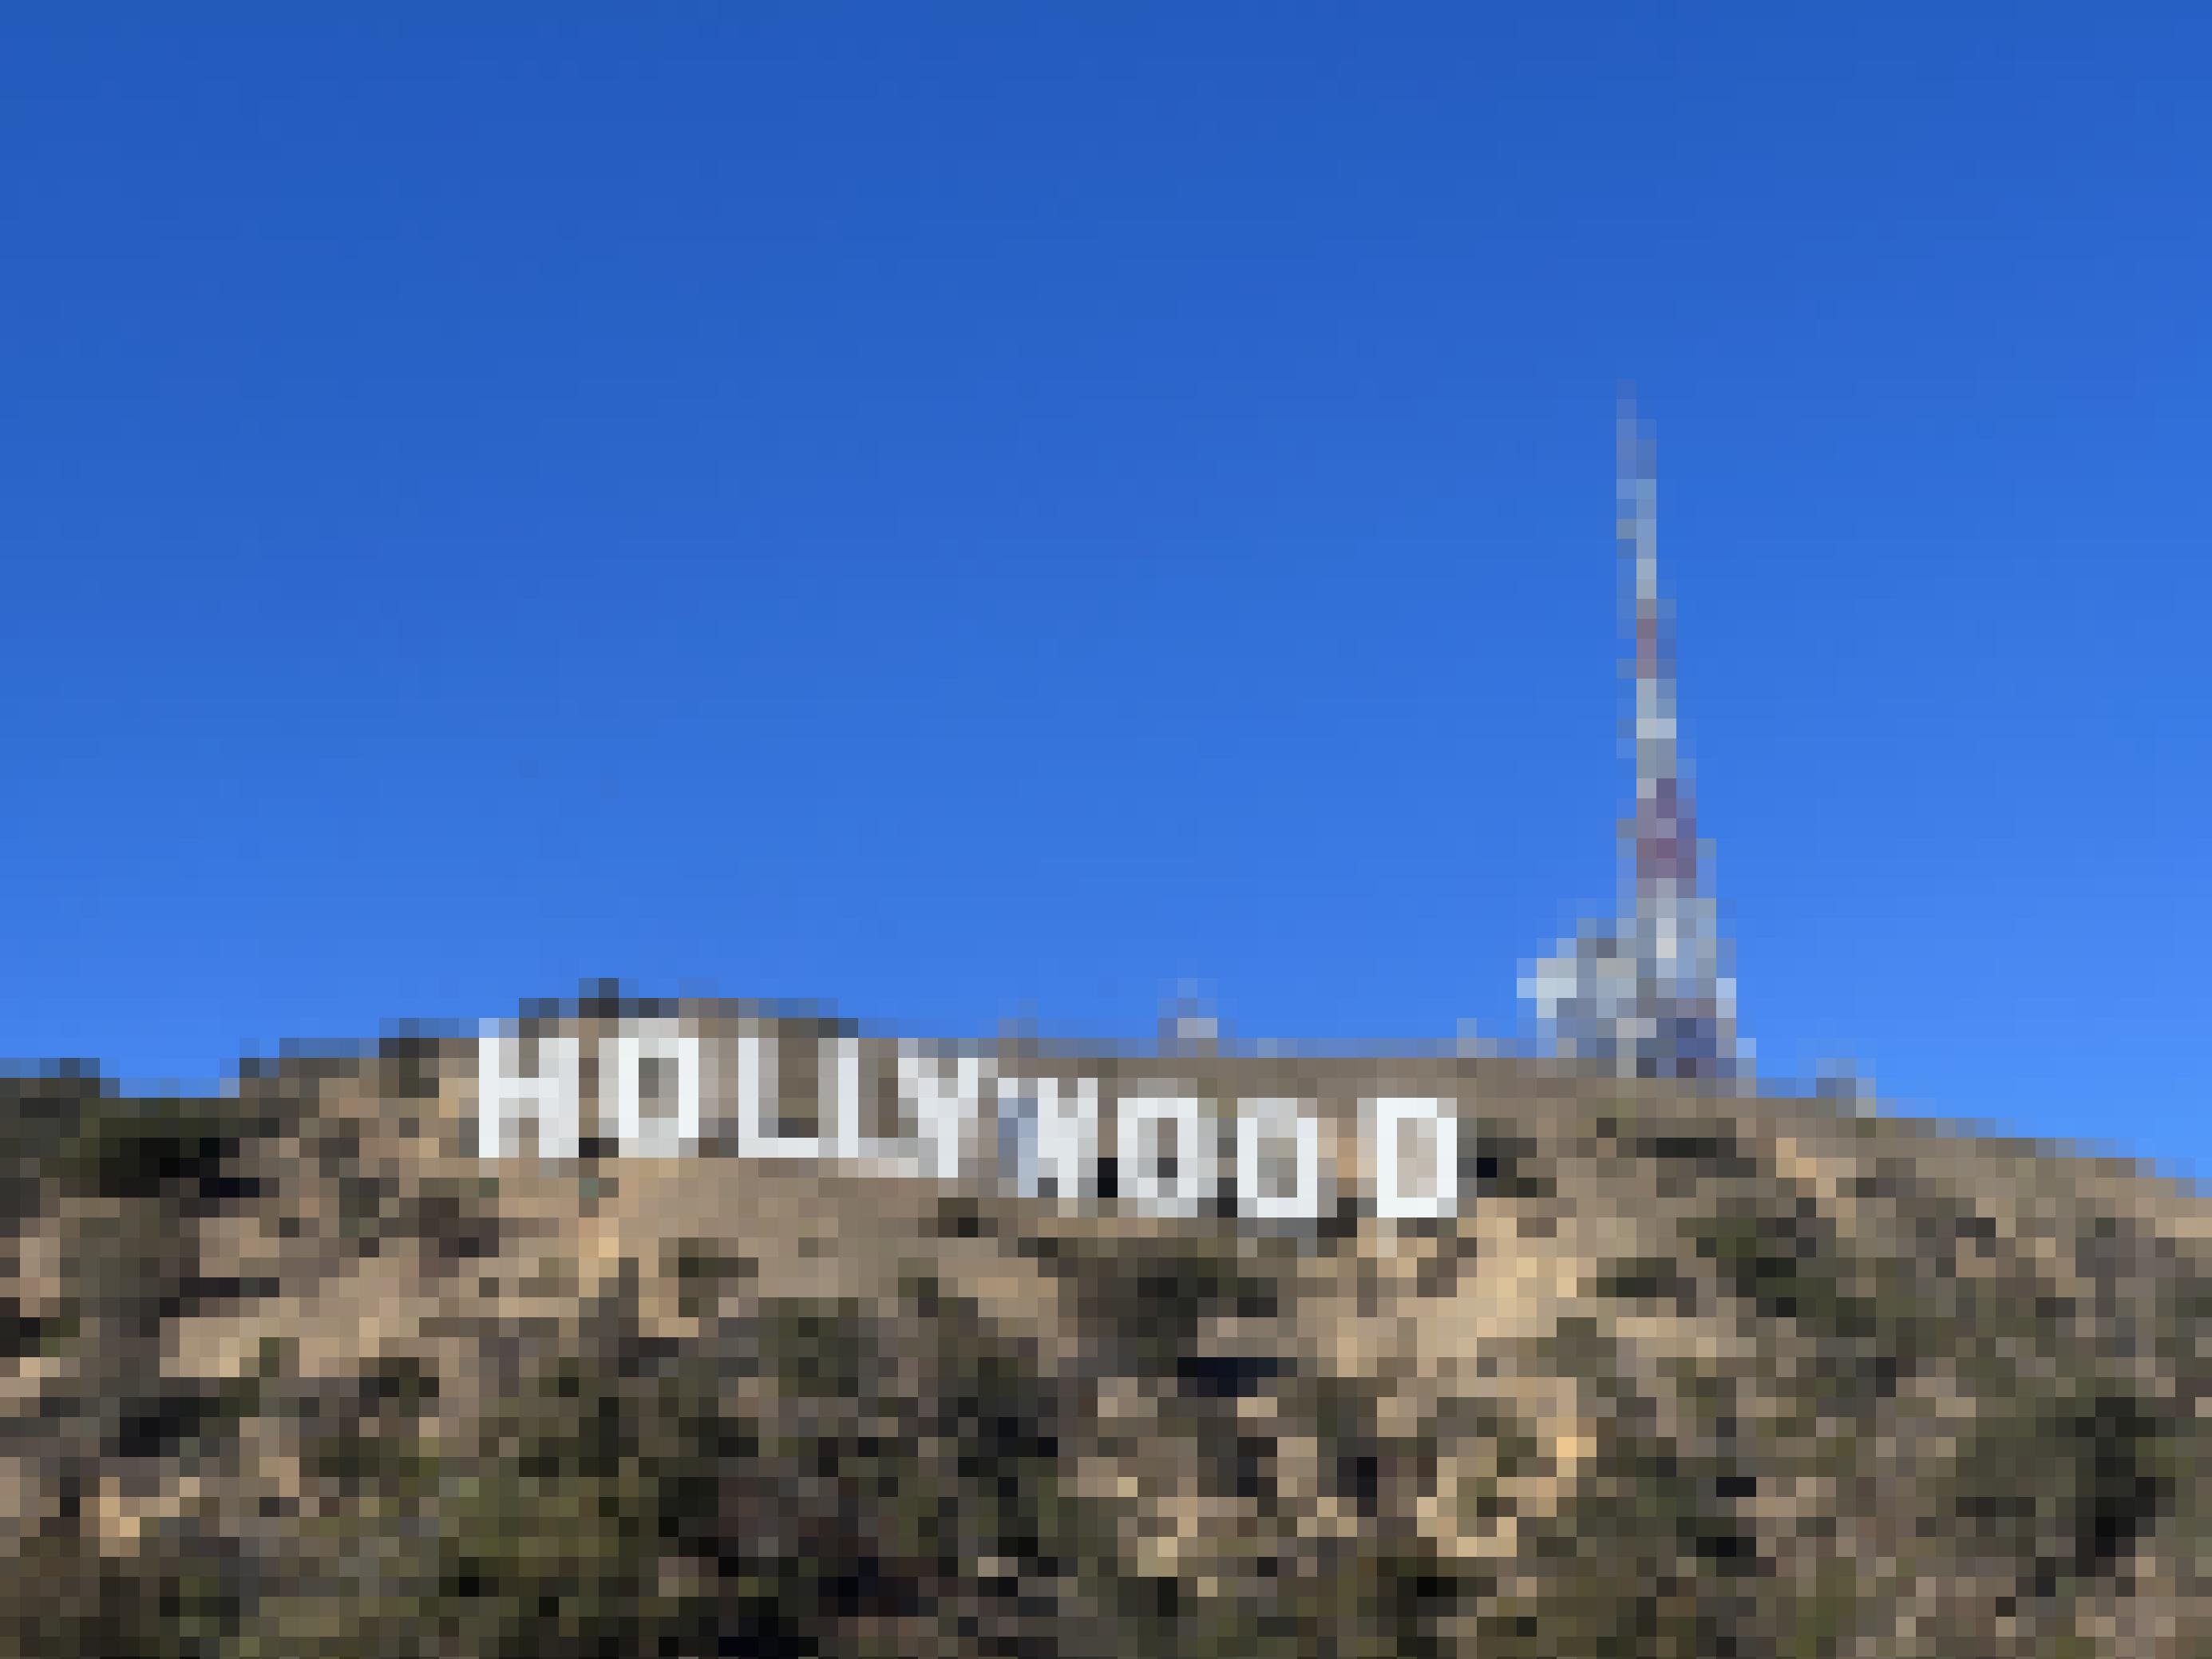 Der strahlend weiße Hollywood Schriftzug in den Hügeln, im Hintergrund die Türme eines Elektrizitätswerkes, d arüber viel wolkenloser Himmel.